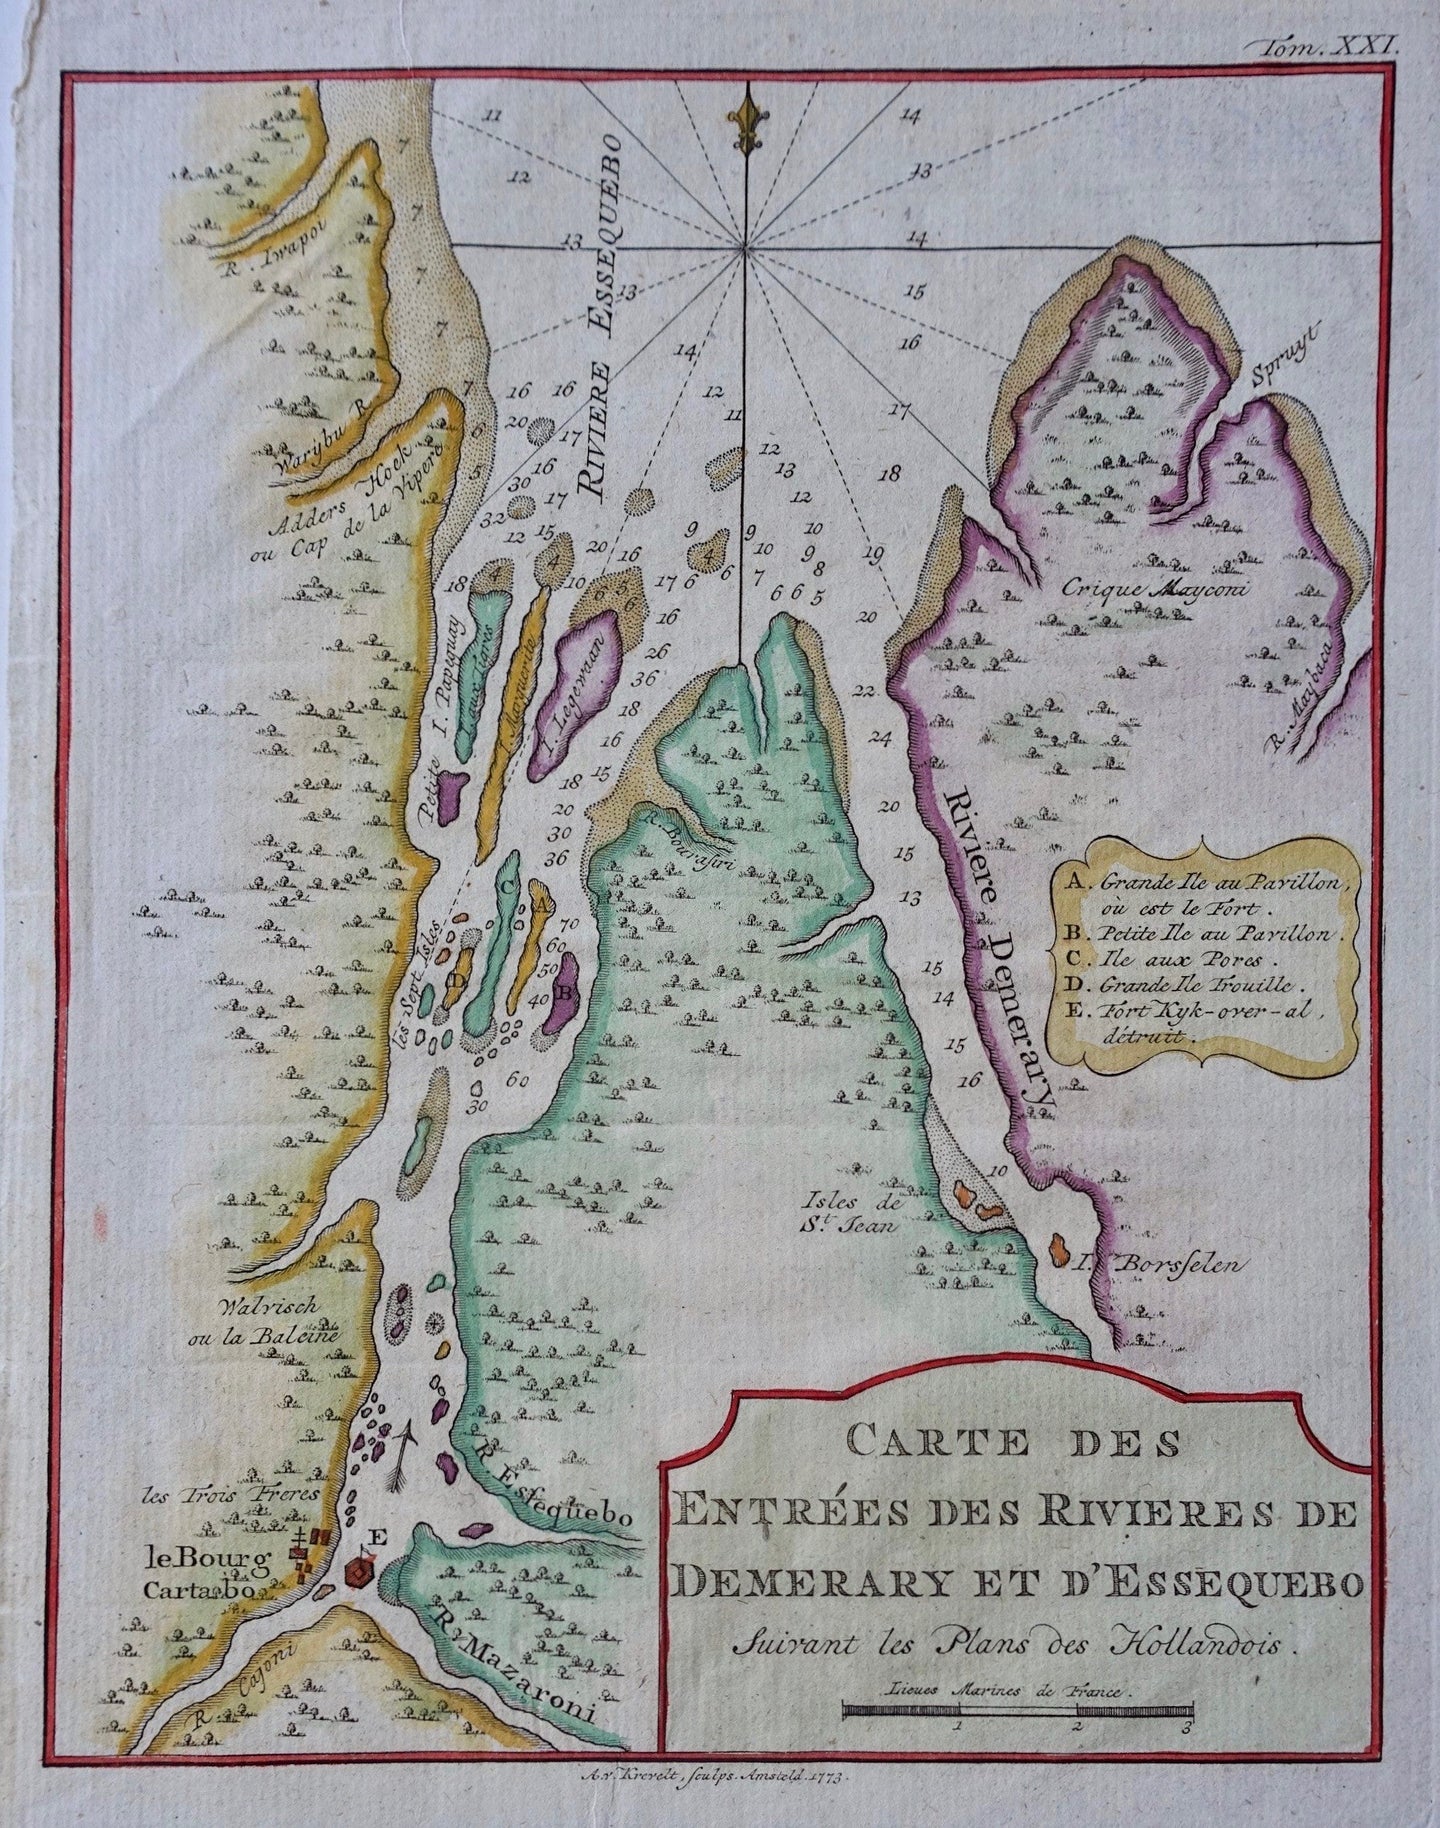 Guyana Essequebo en Demerary - JN Bellin / A van Krevelt - 1773